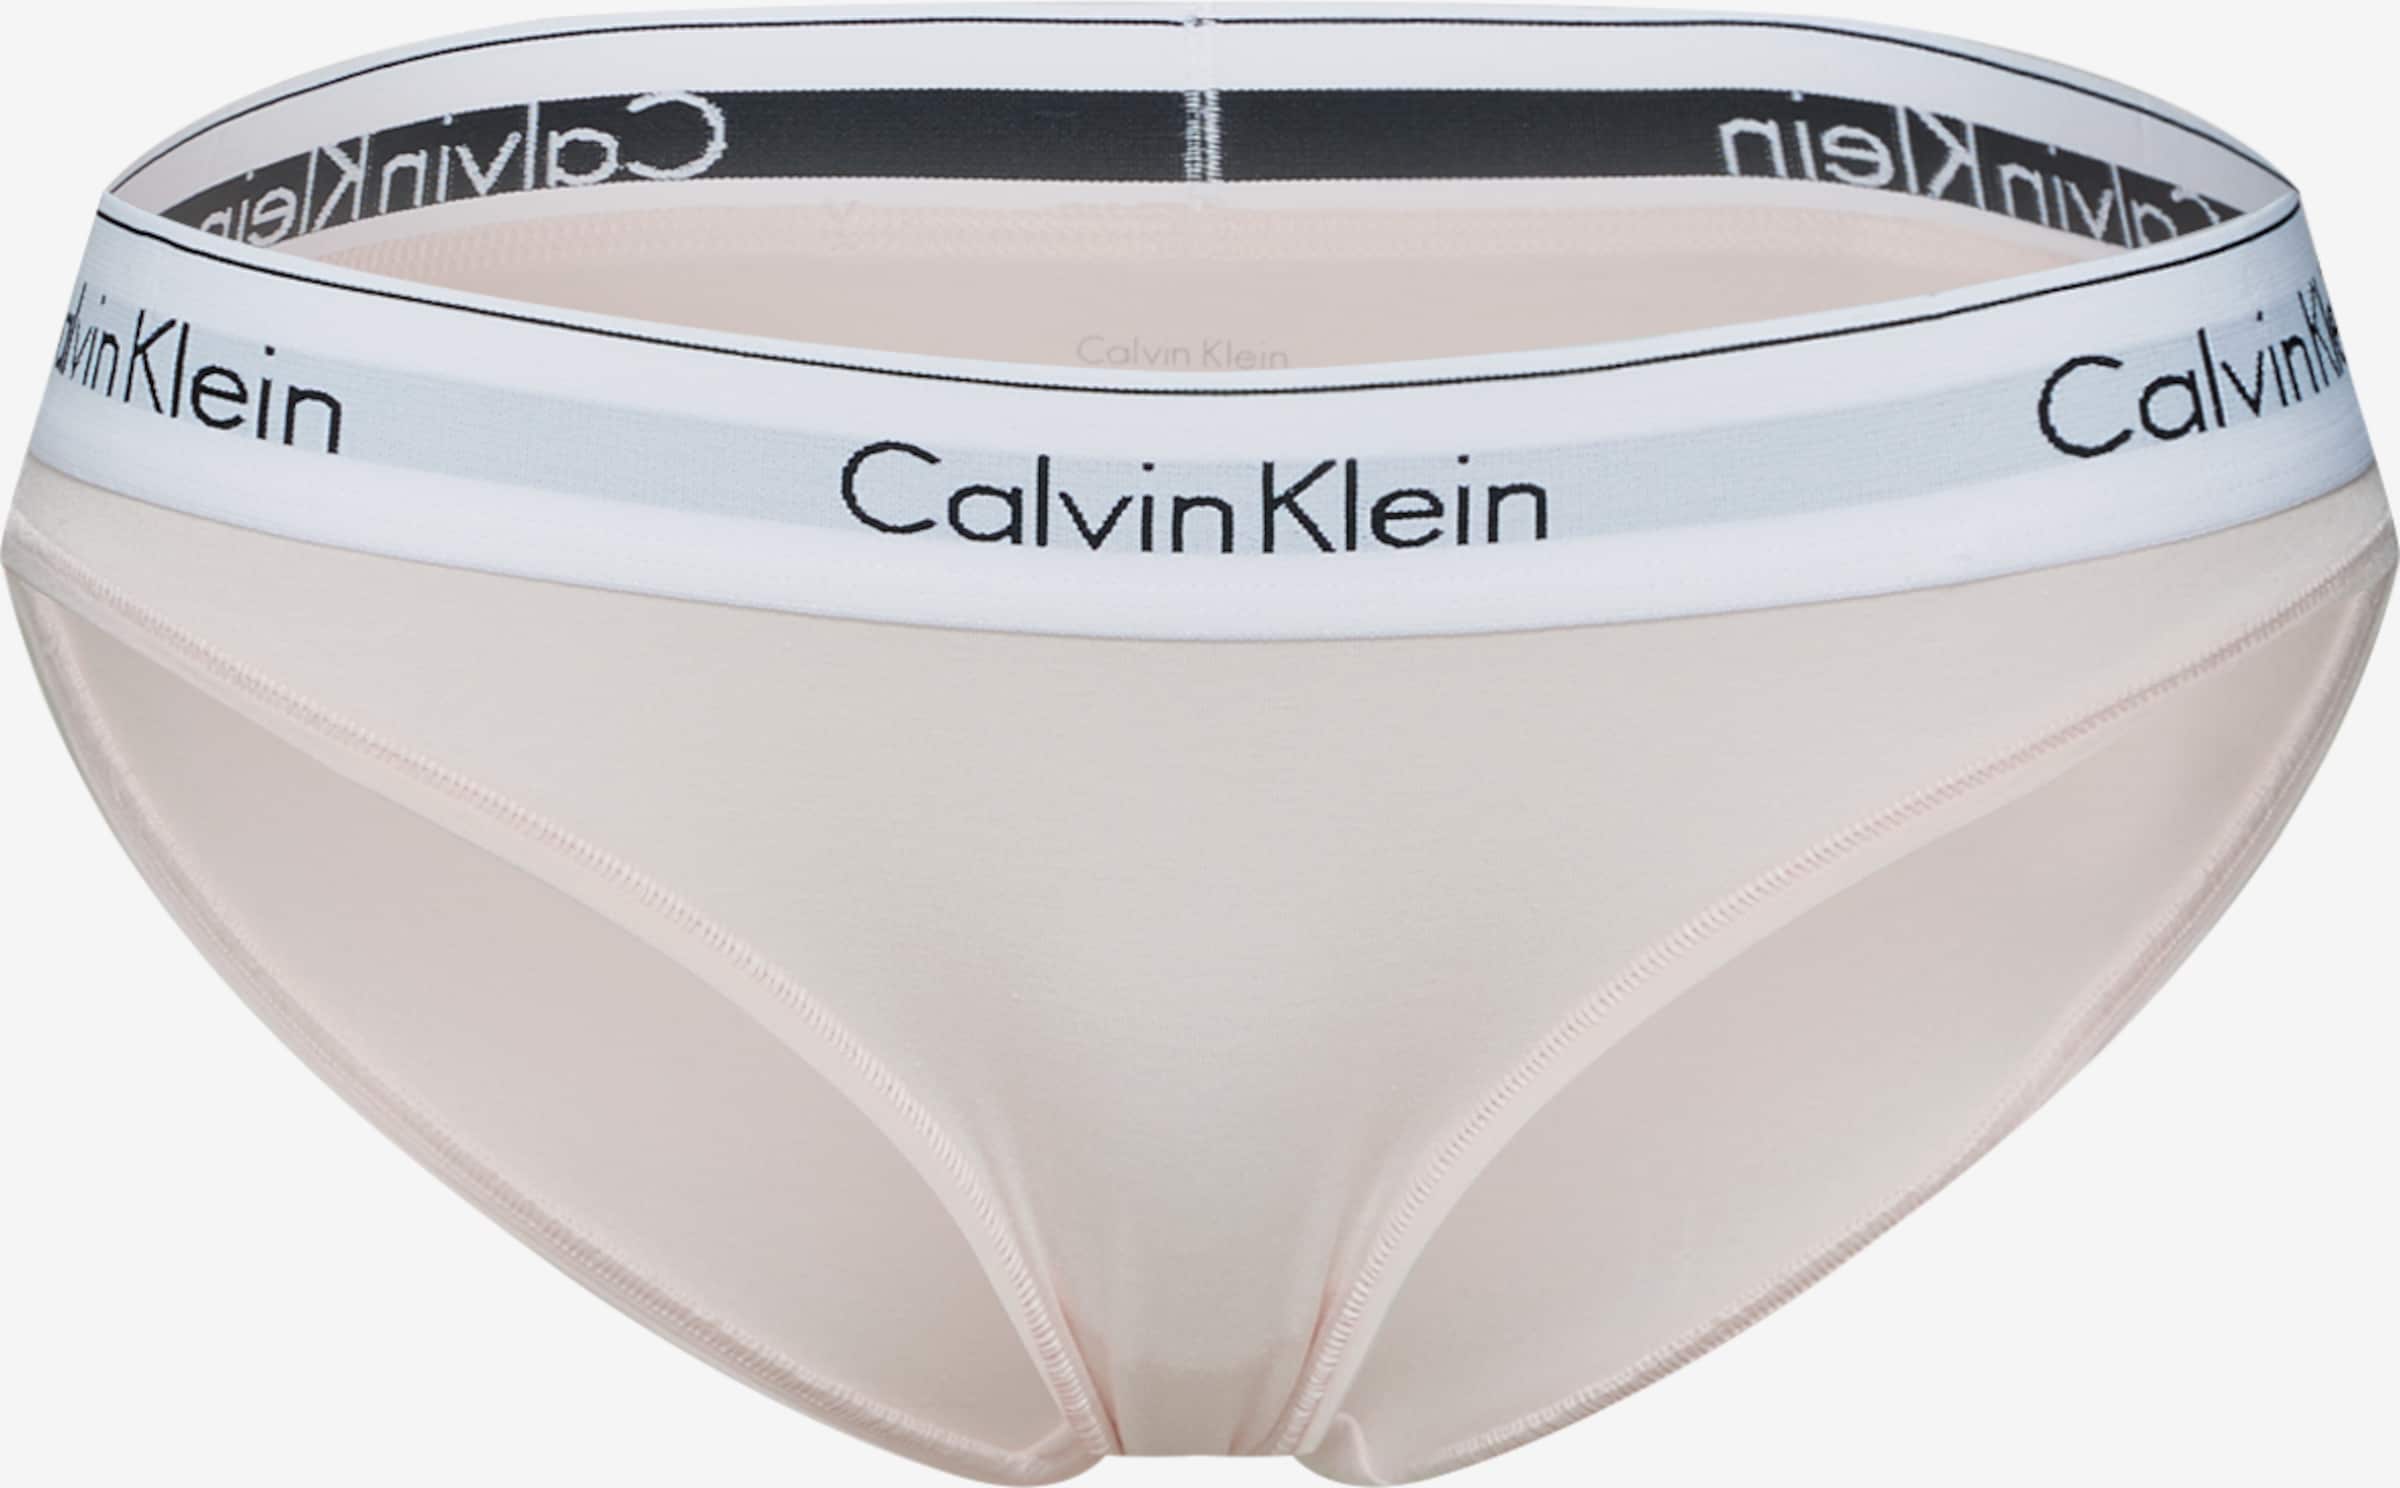 Calvin Klein Underwear Modern Cotton Bikini (Nymph's Thigh